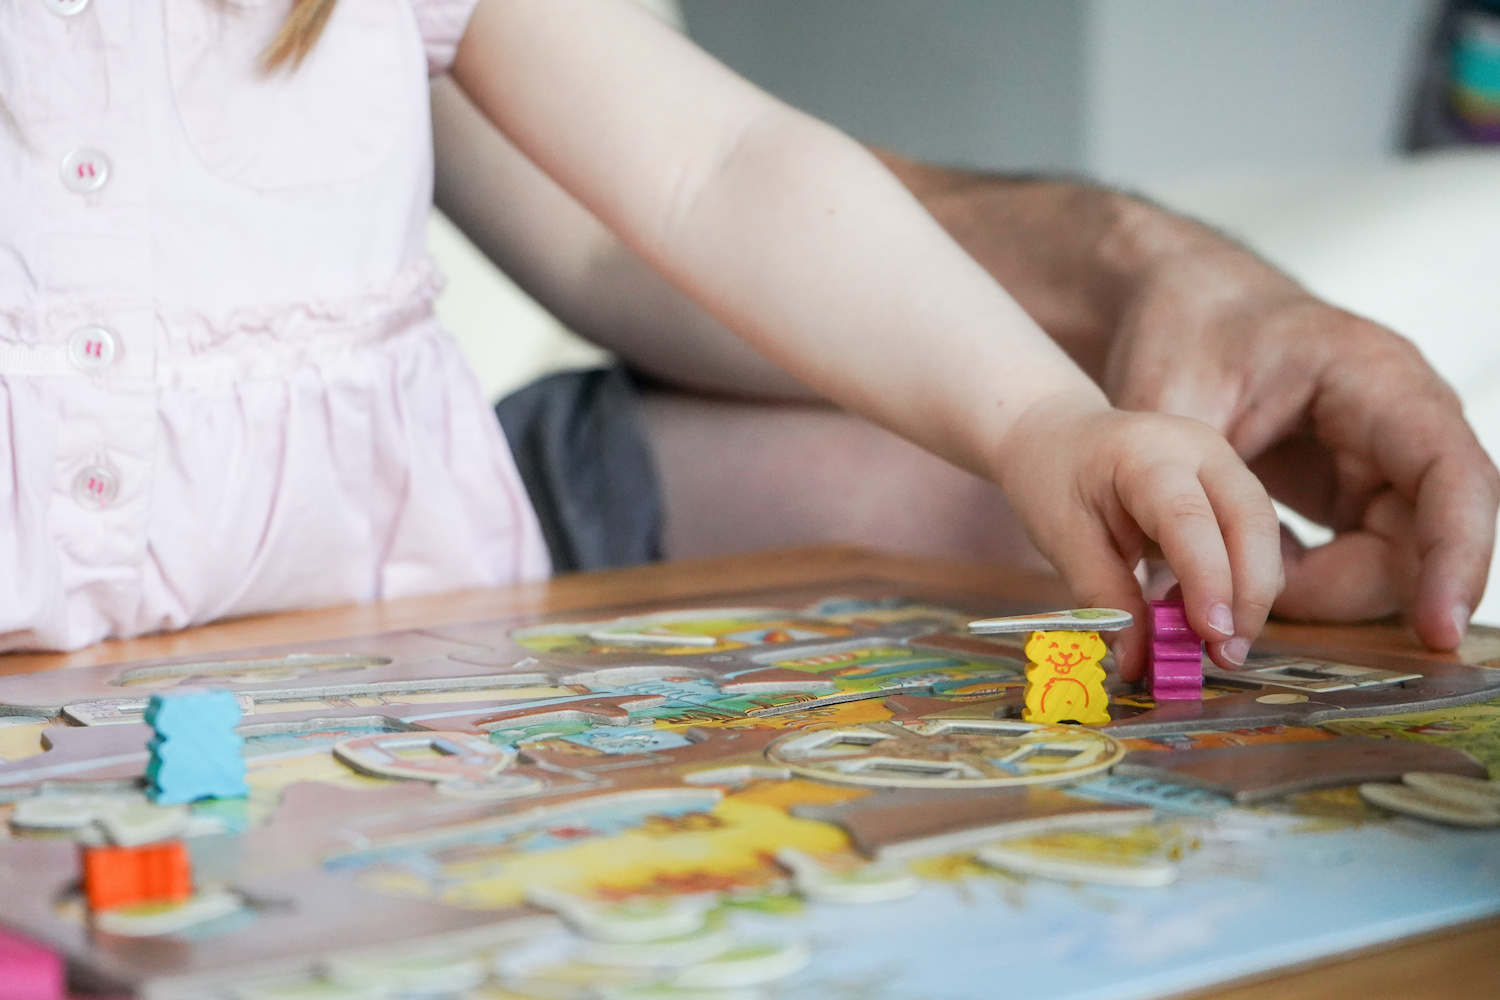 Jeux de société pour les enfants de 4 à 6 ans : quels puzzles choisir ?